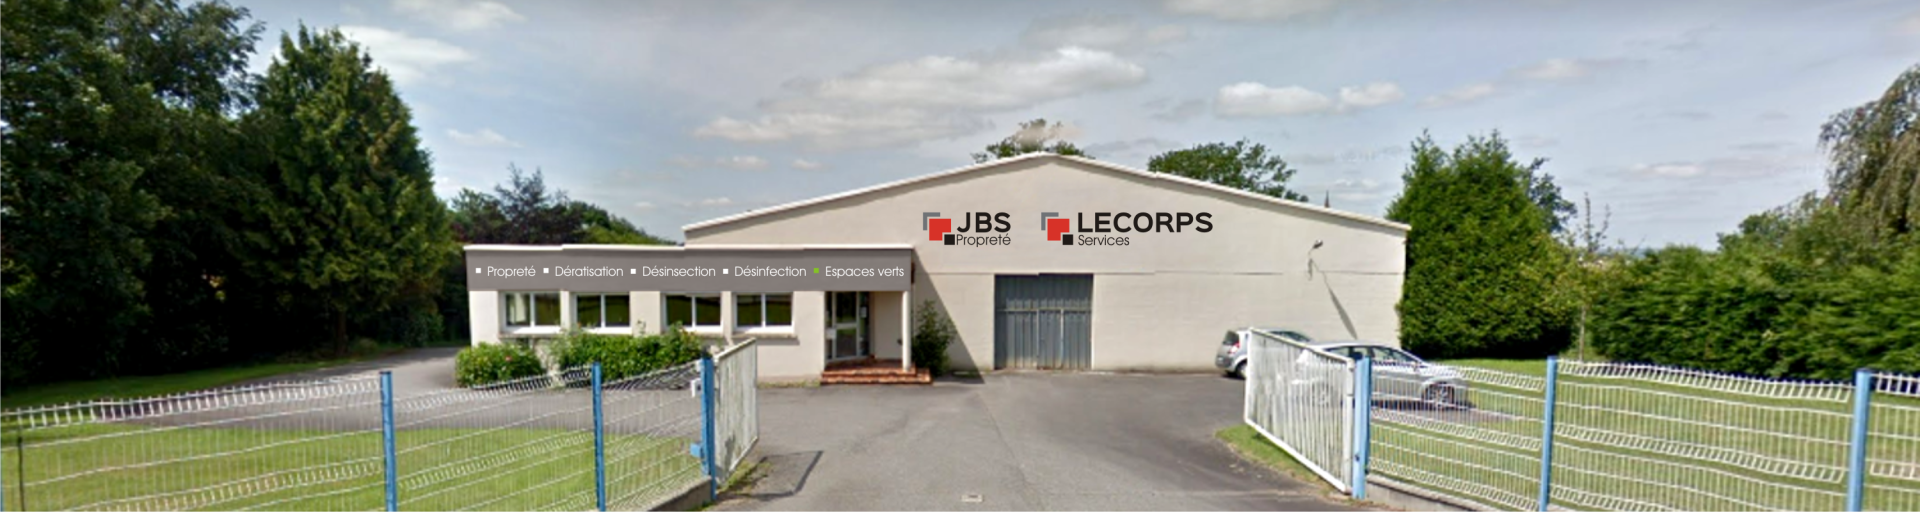 JBS Propreté Flers - Entreprise de propreté et services 3D